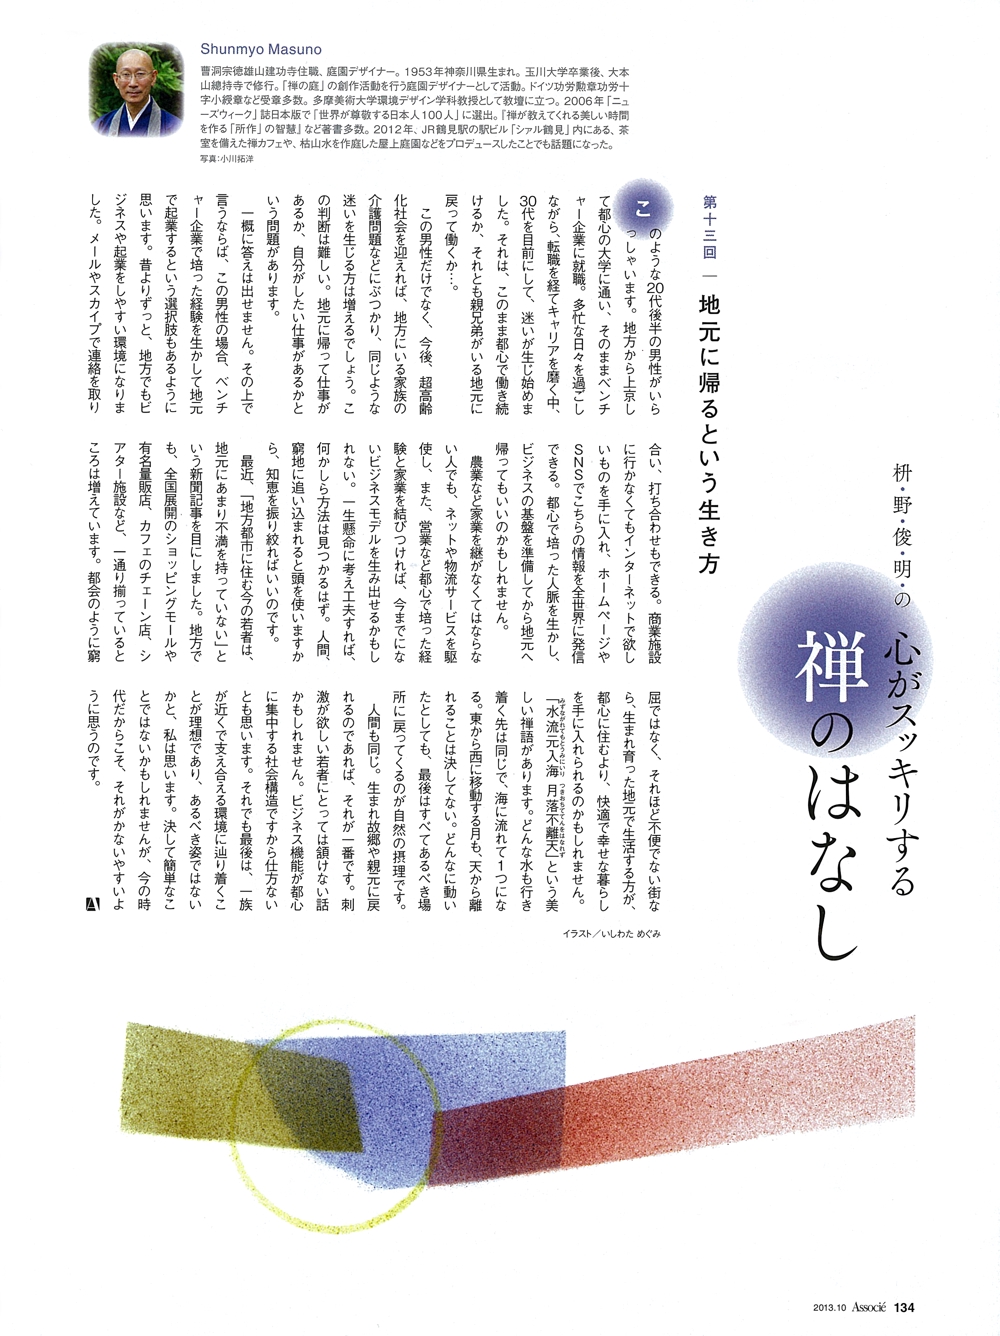 雑誌「日経ビジネスAssocie」禅のお話の挿絵